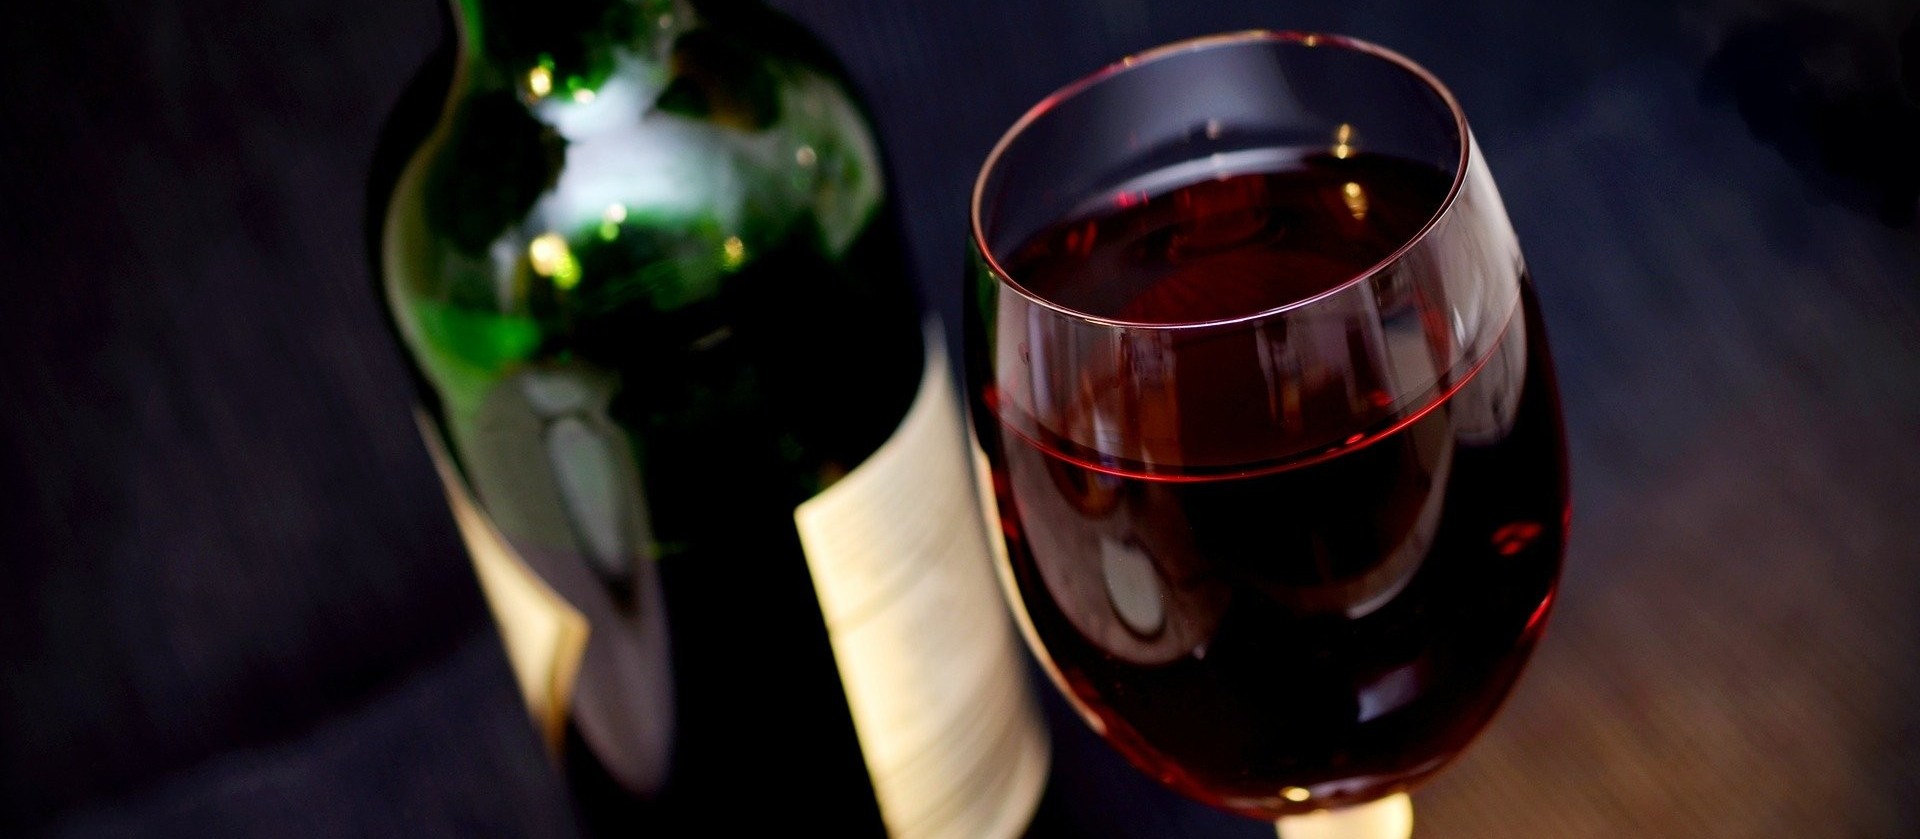 Empresários doam vinhos e experiências gastronômicas para leilão beneficente